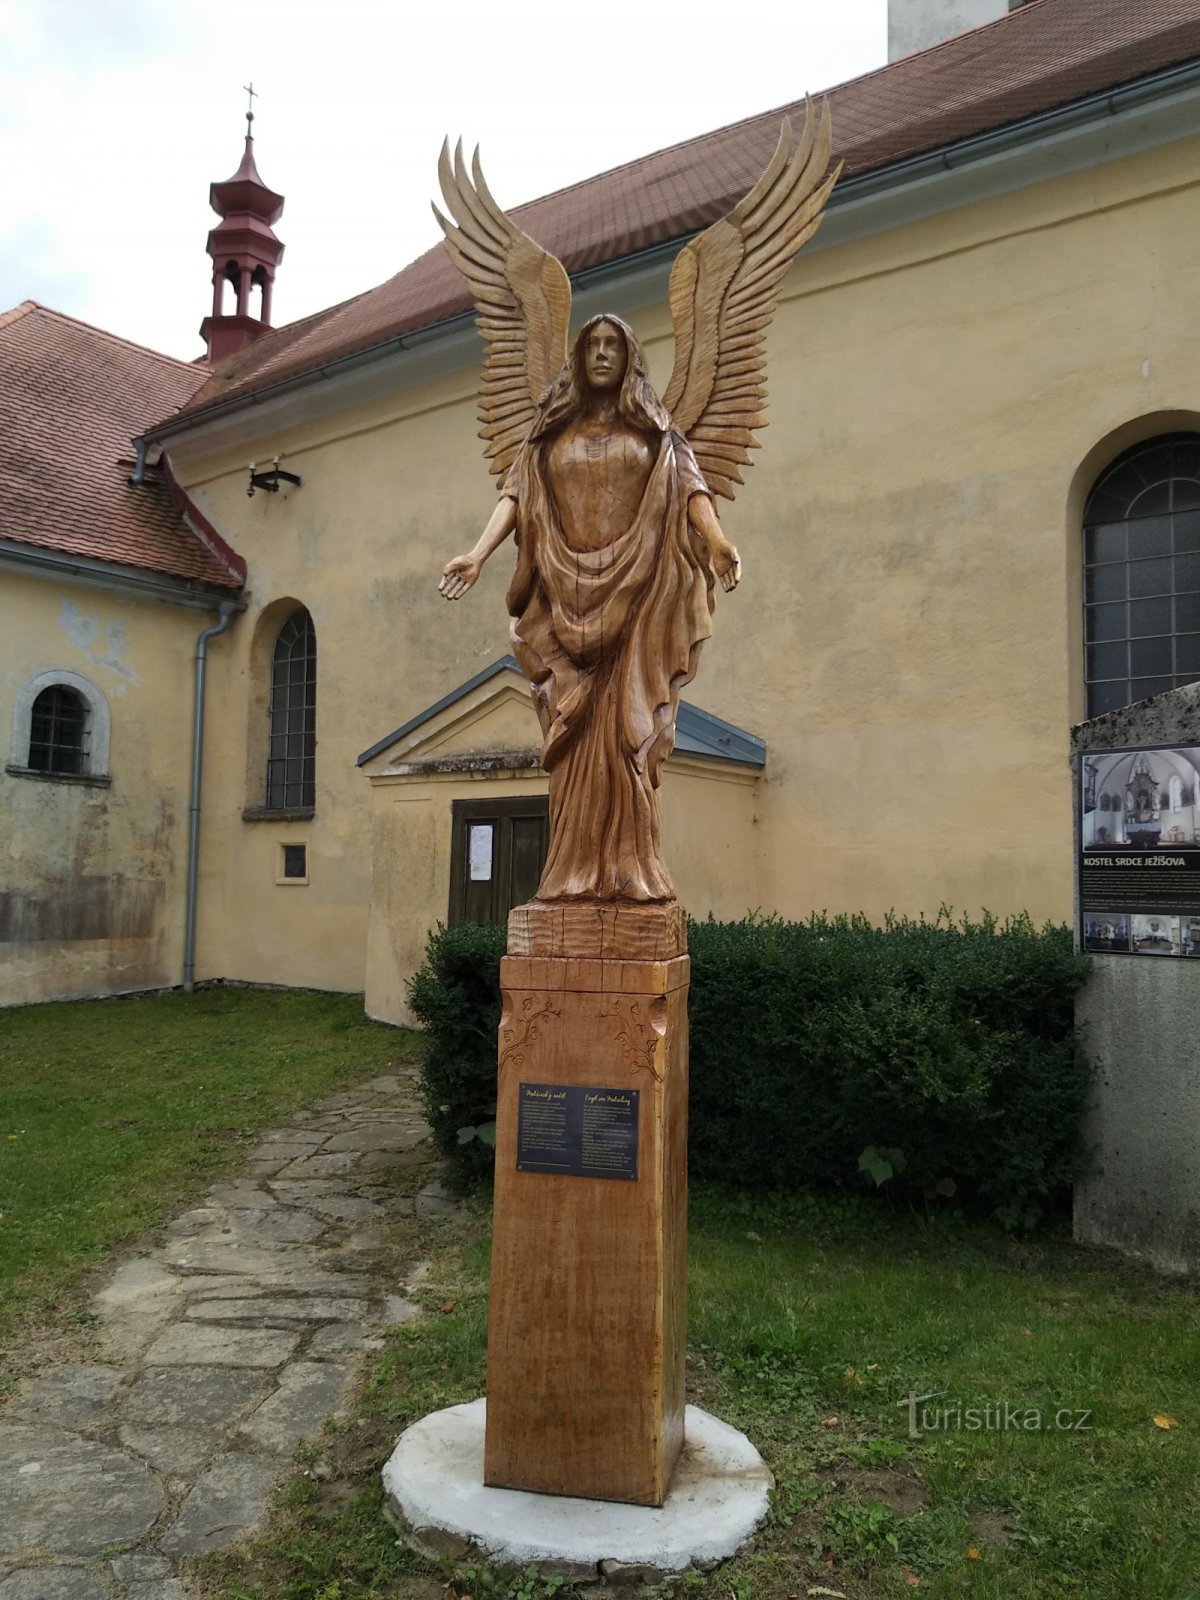 Îngerul Malšín în fața bisericii